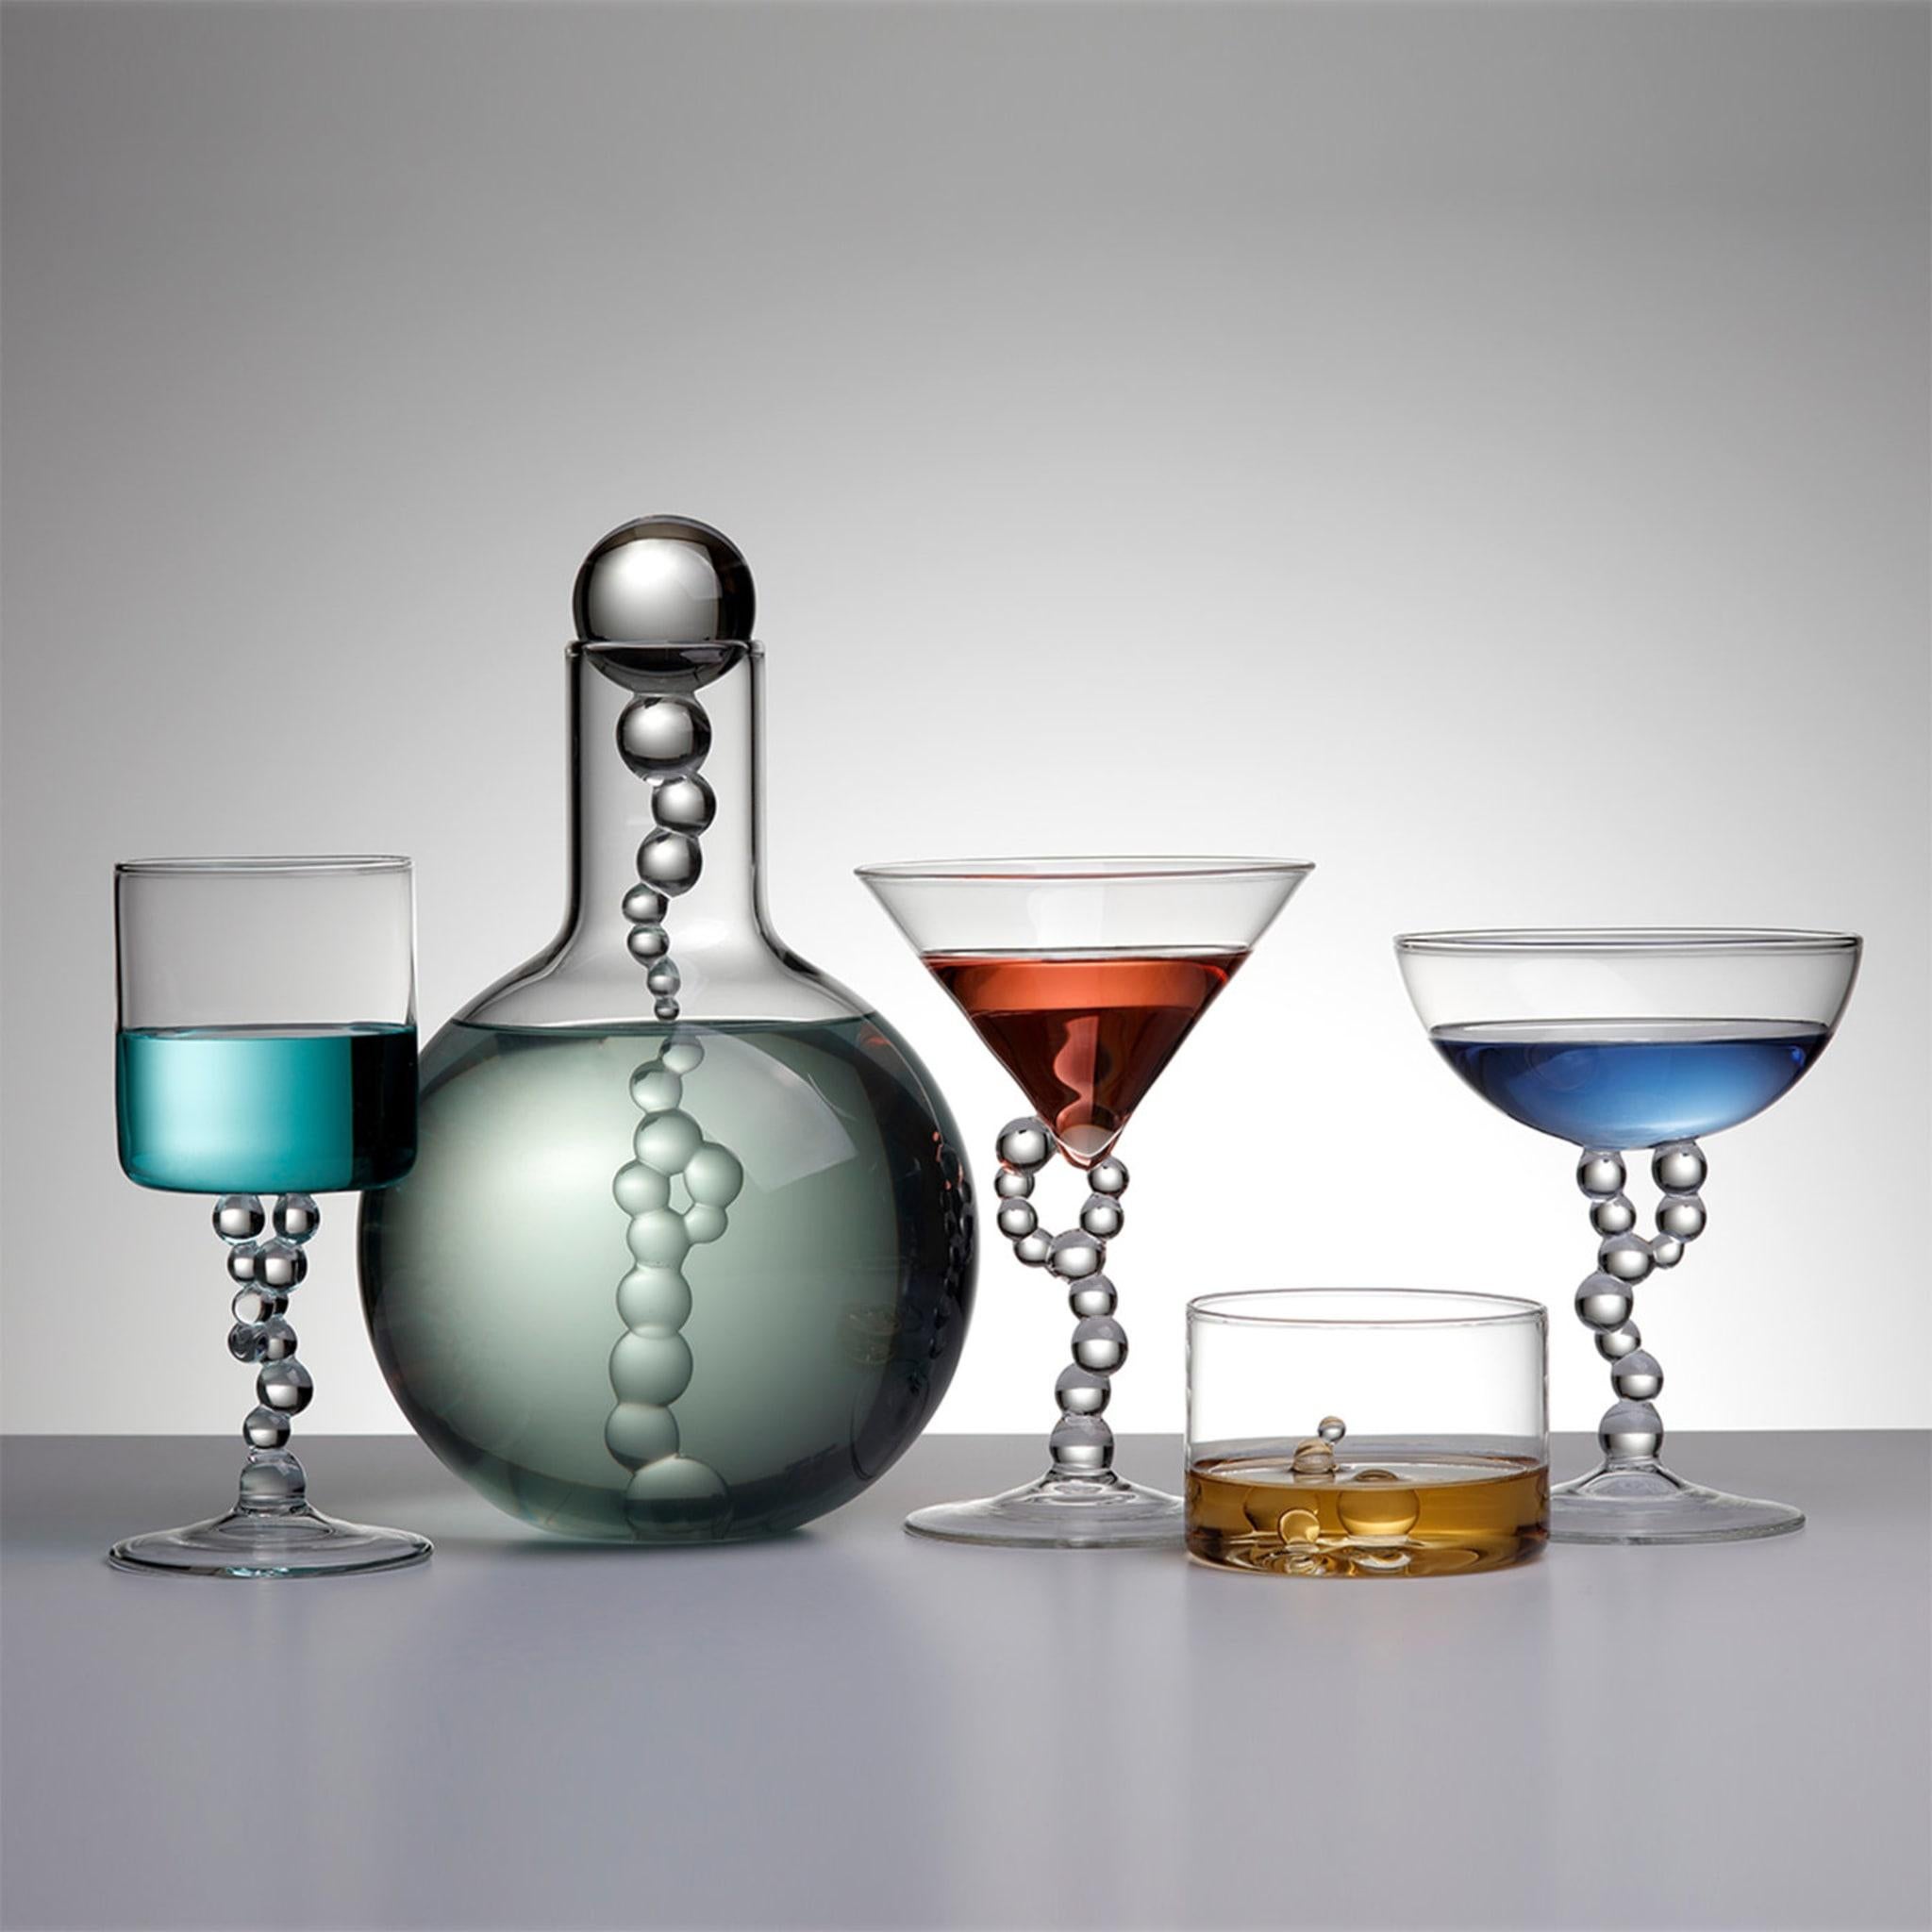 Une collection composée de bouteilles, de verres à vin, de verres à cocktail et de verres à whisky, née d'une réinterprétation ironique de la verrerie de laboratoire chimique. Les flacons, les tubes à essai, les entonnoirs et les cylindres